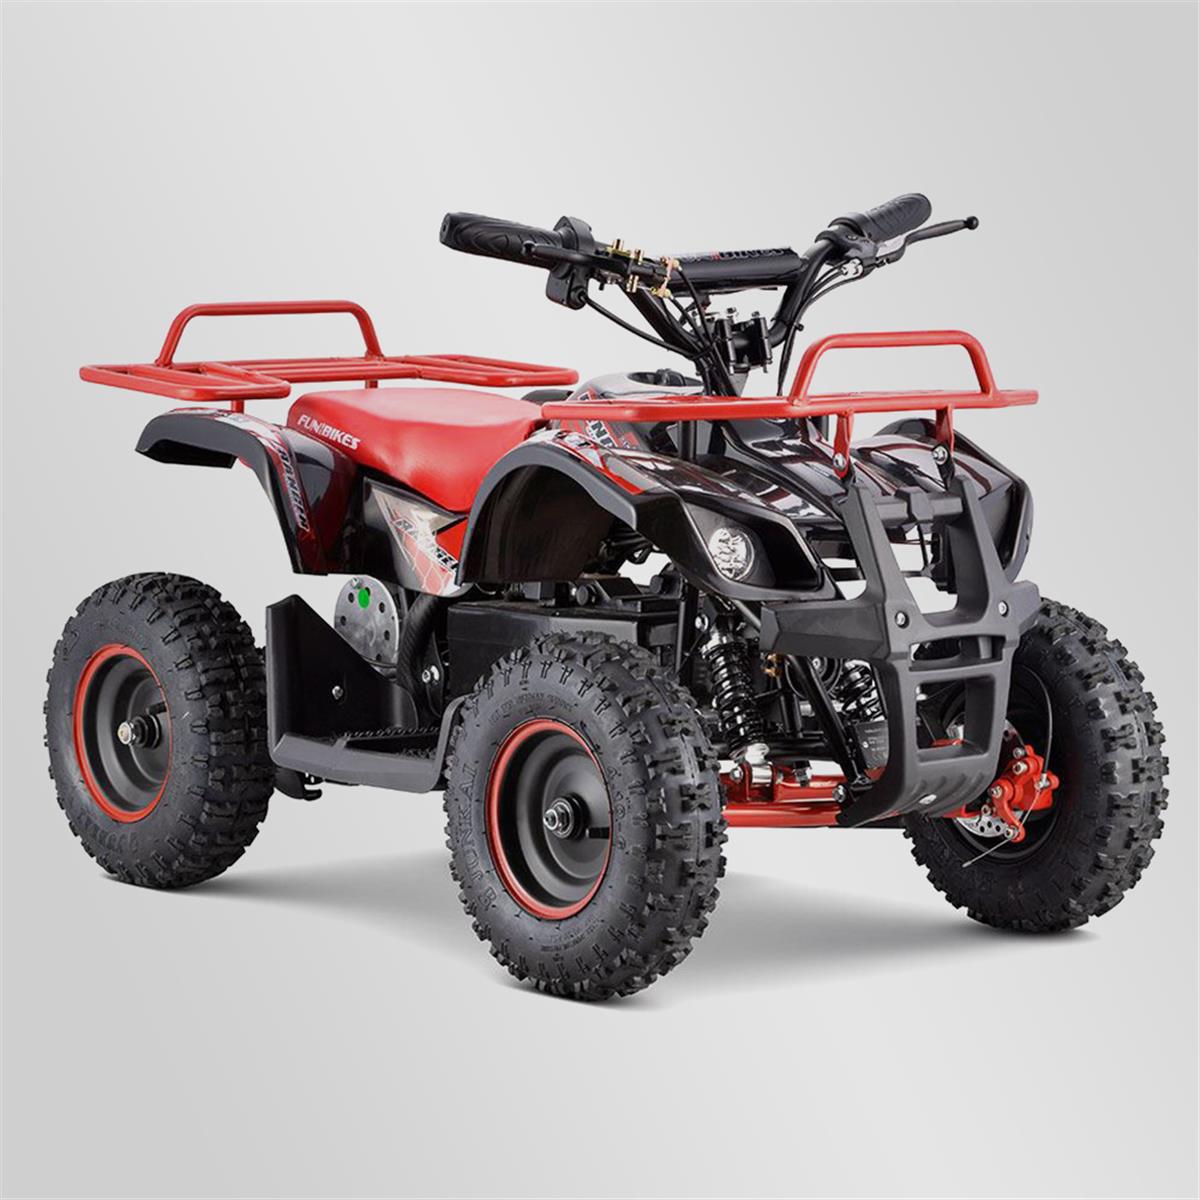 Pocket quad enfant electrique 800w smx ranger 6" - Rouge | Smallmx - Dirt  bike, Pit bike, Quads, Minimoto